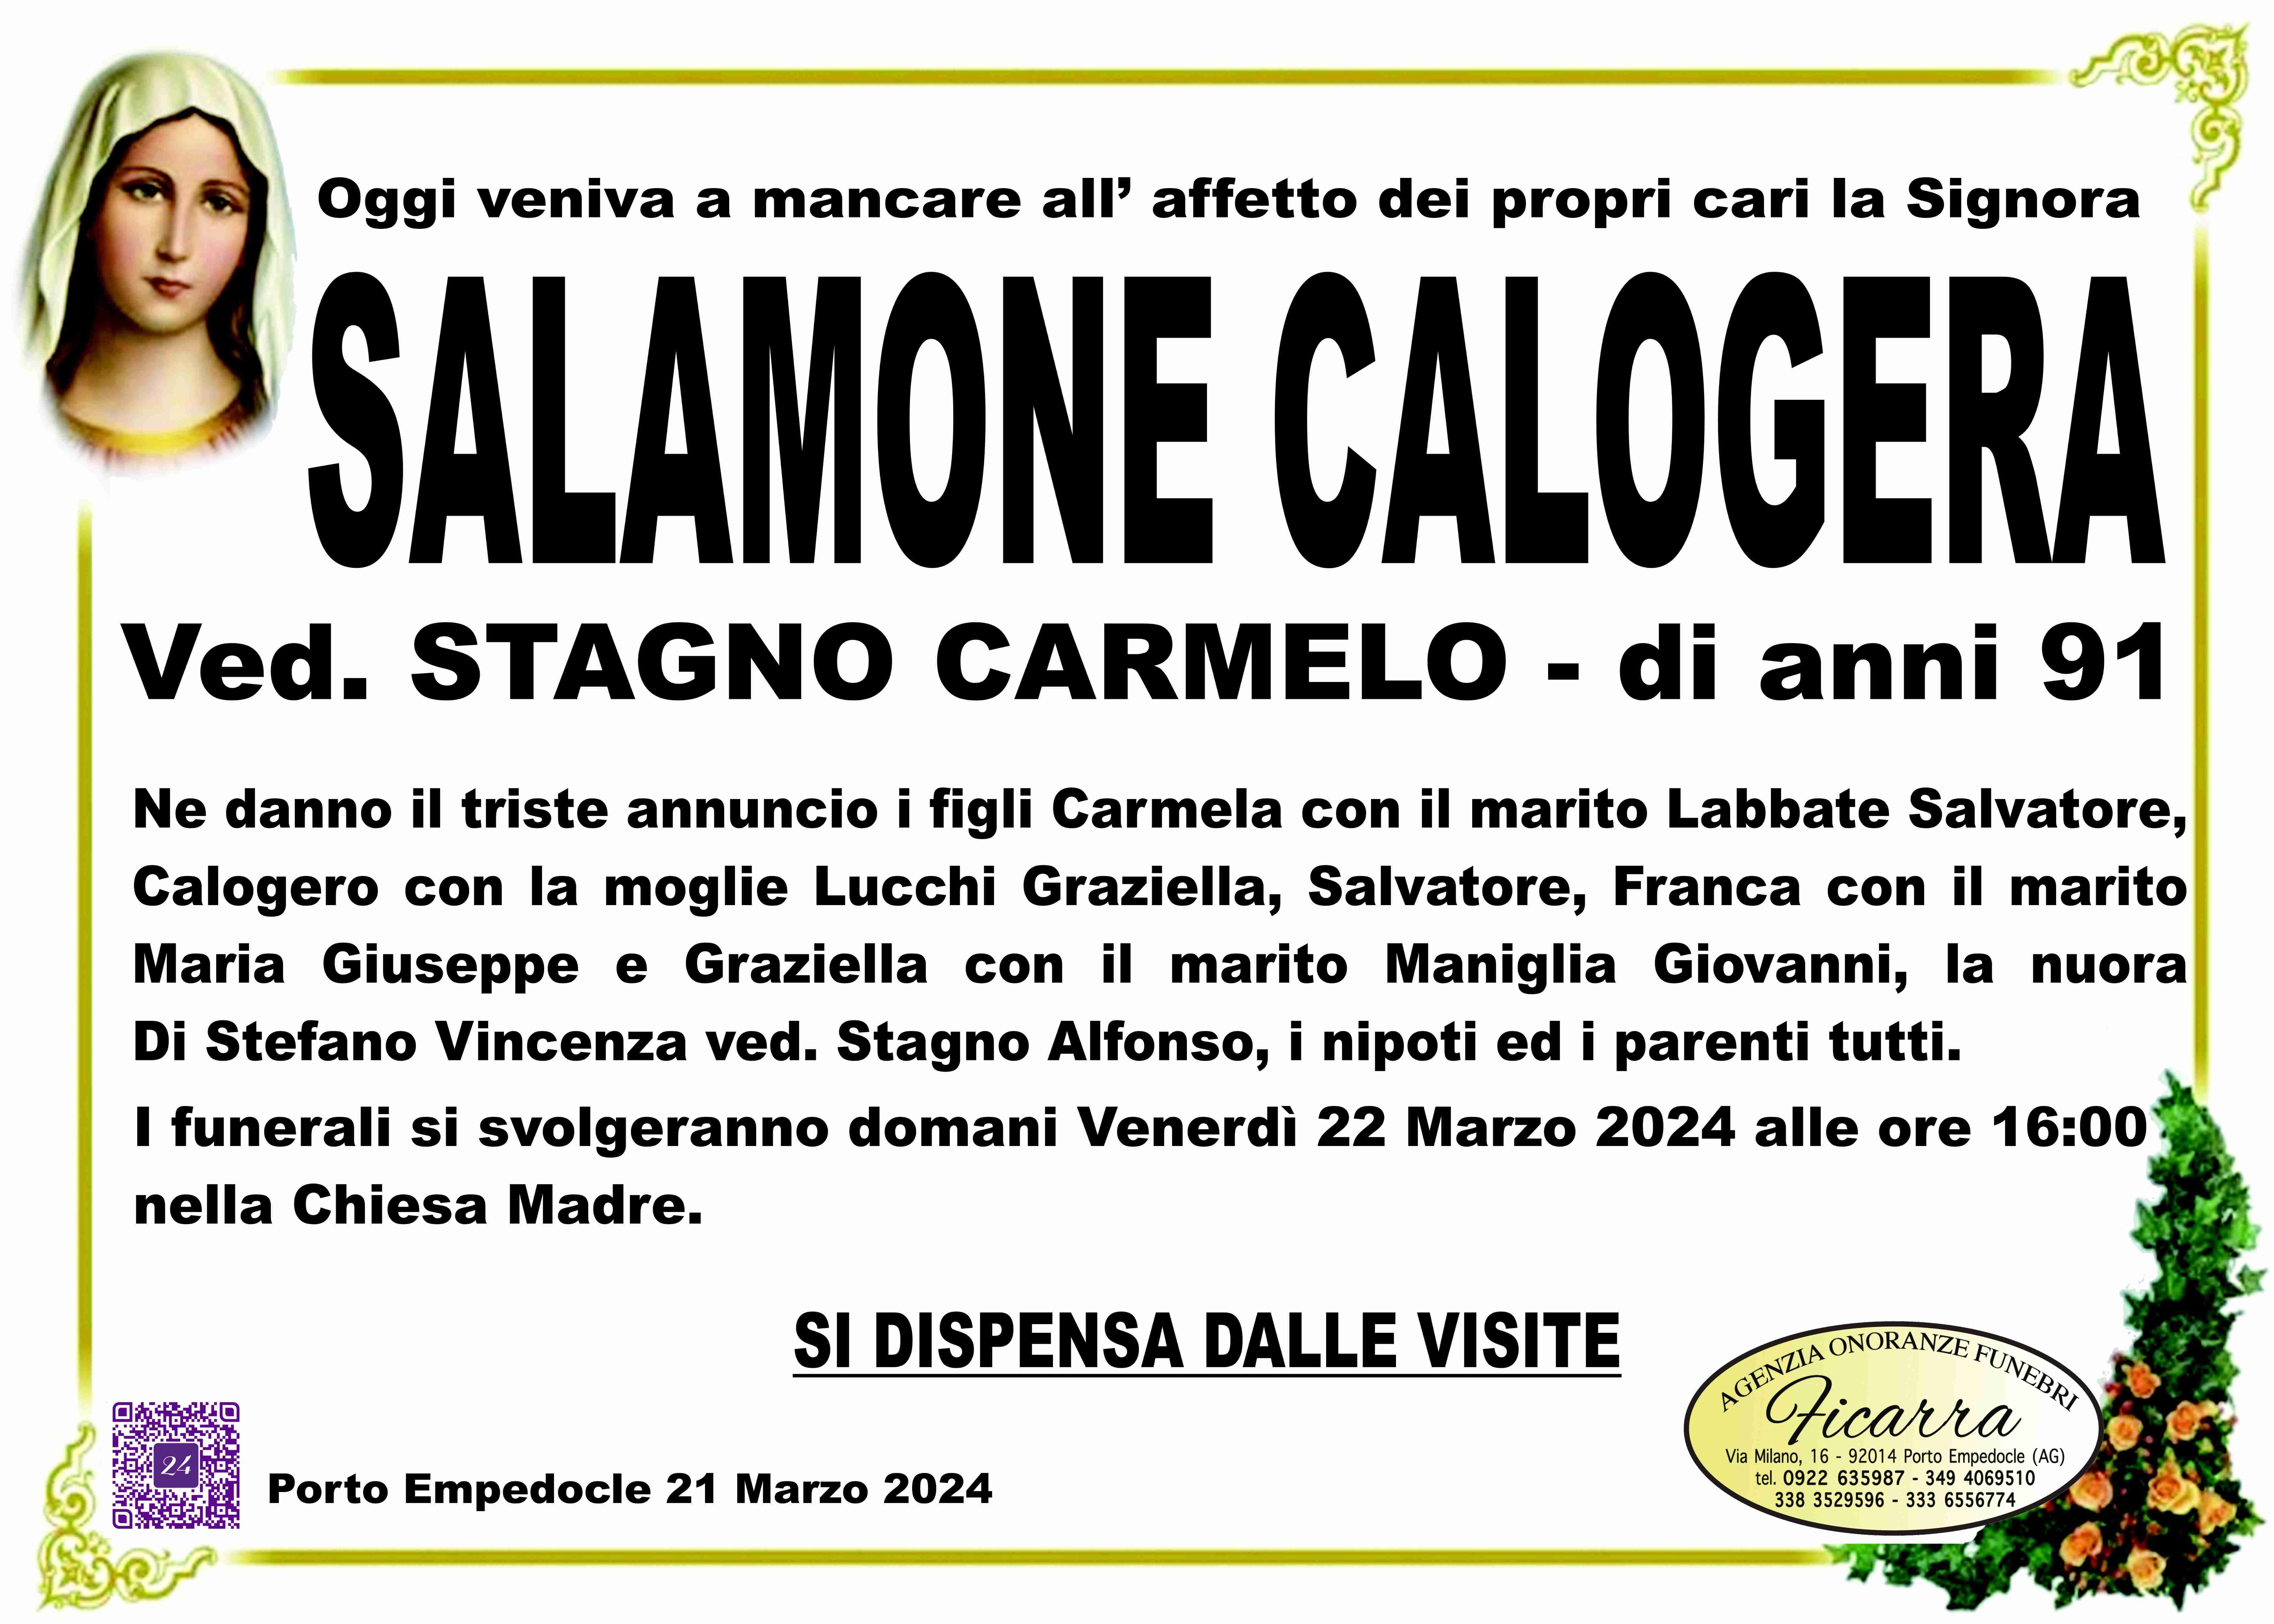 Calogera Salamone